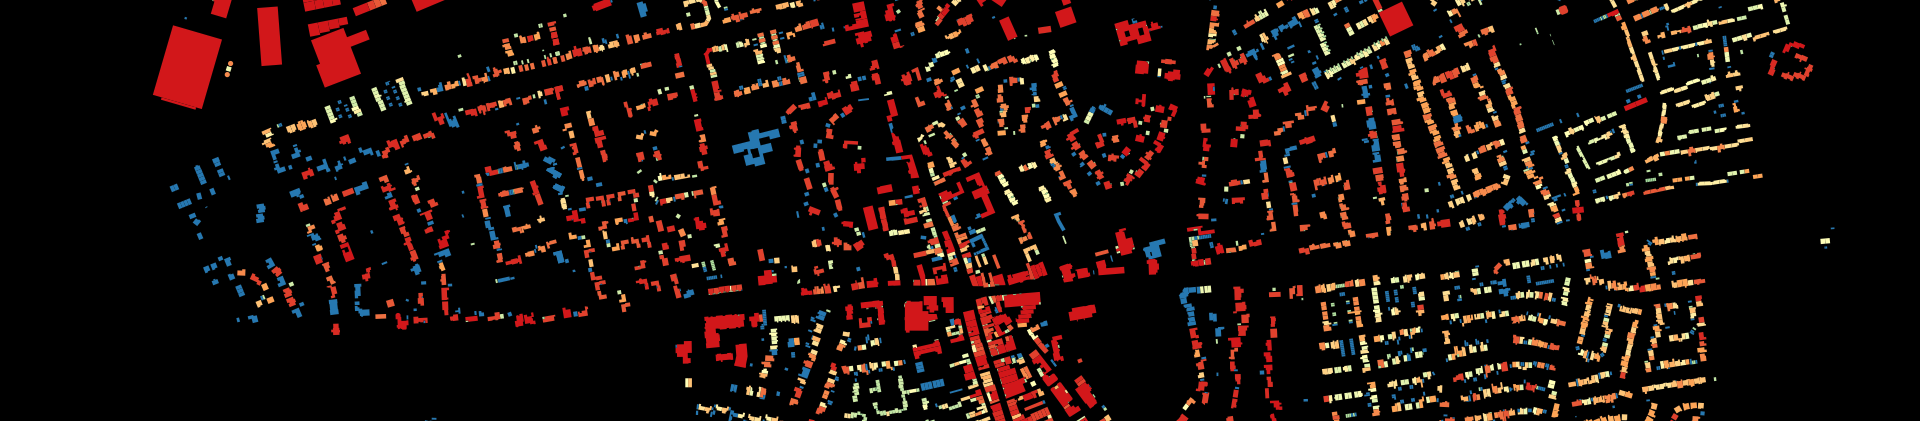 Our ‘Emergent Neighbourhoods’ model reviewed on Planetizen